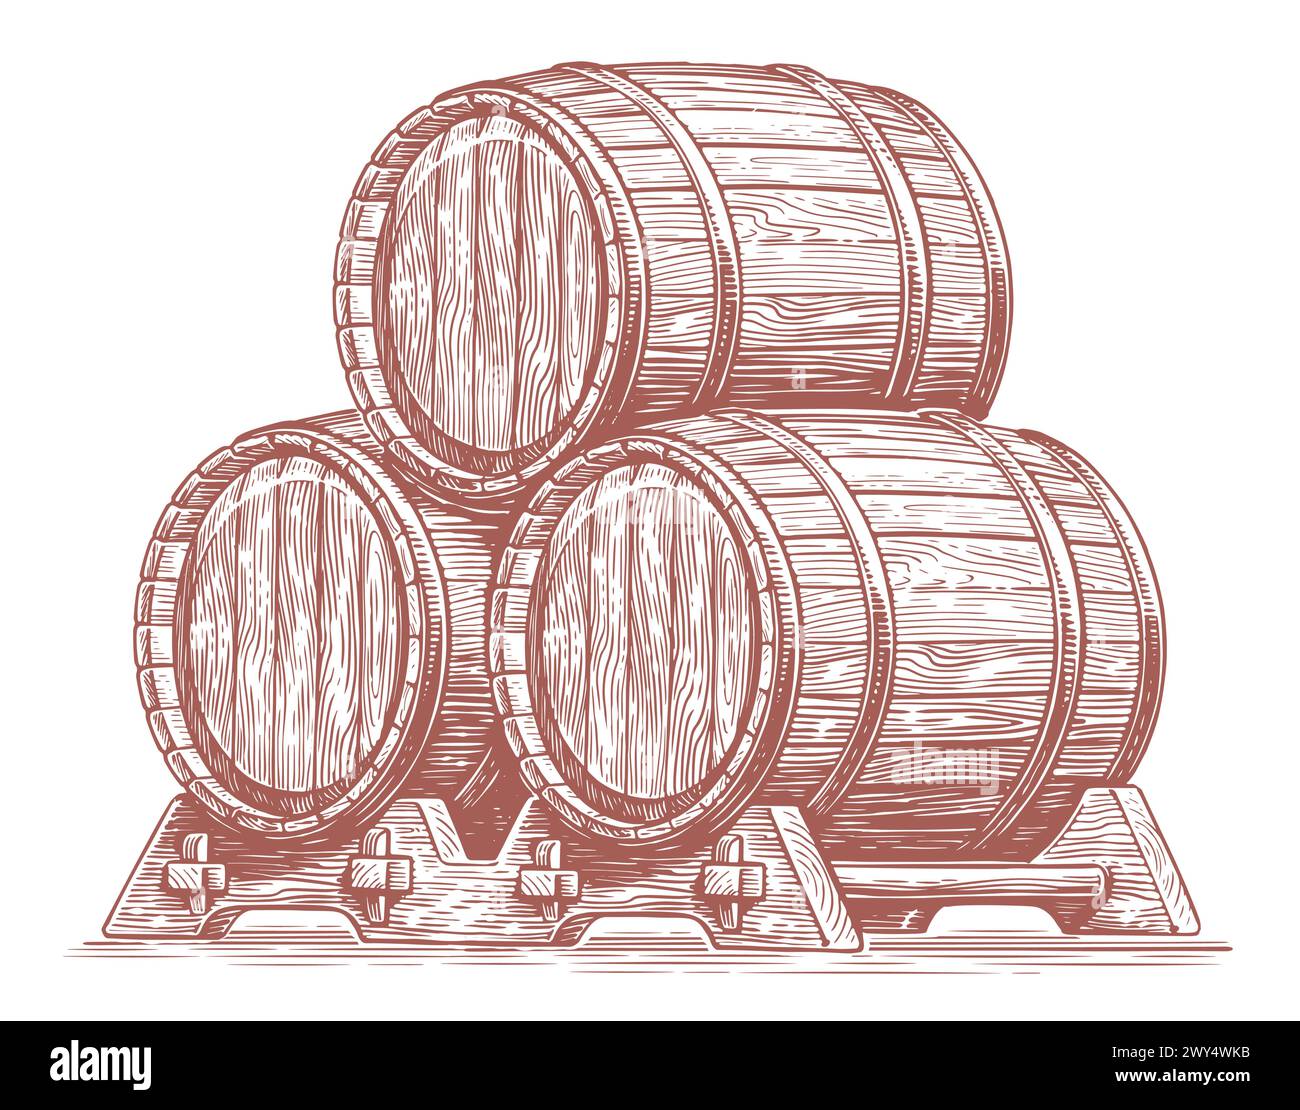 Tre botti di rovere per bevande alcoliche. Botti di legno, fusti con vino o birra. Illustrazione del vettore di schizzo disegnato a mano Illustrazione Vettoriale